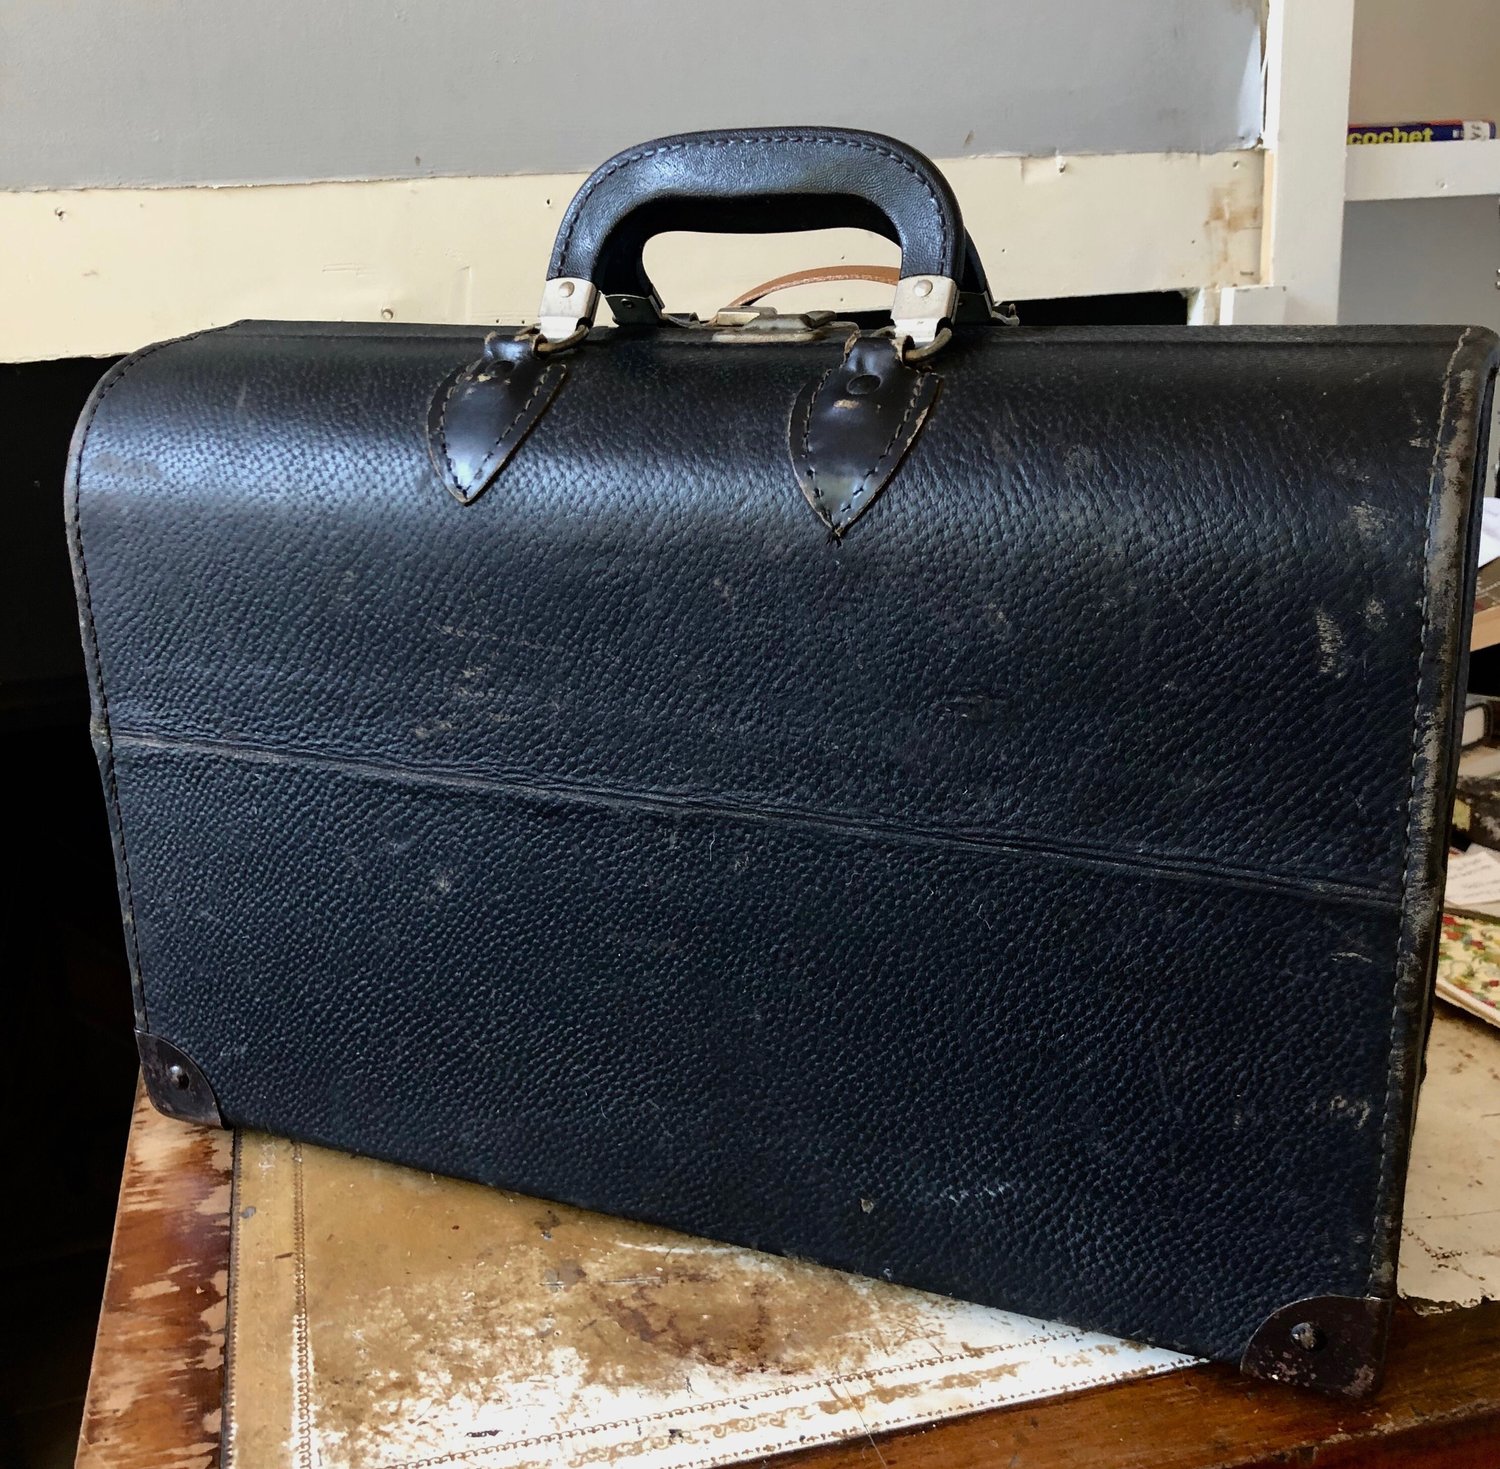 Vintage Doctor's Bag Black for Video Prop or Bar Cart — Forest & Found